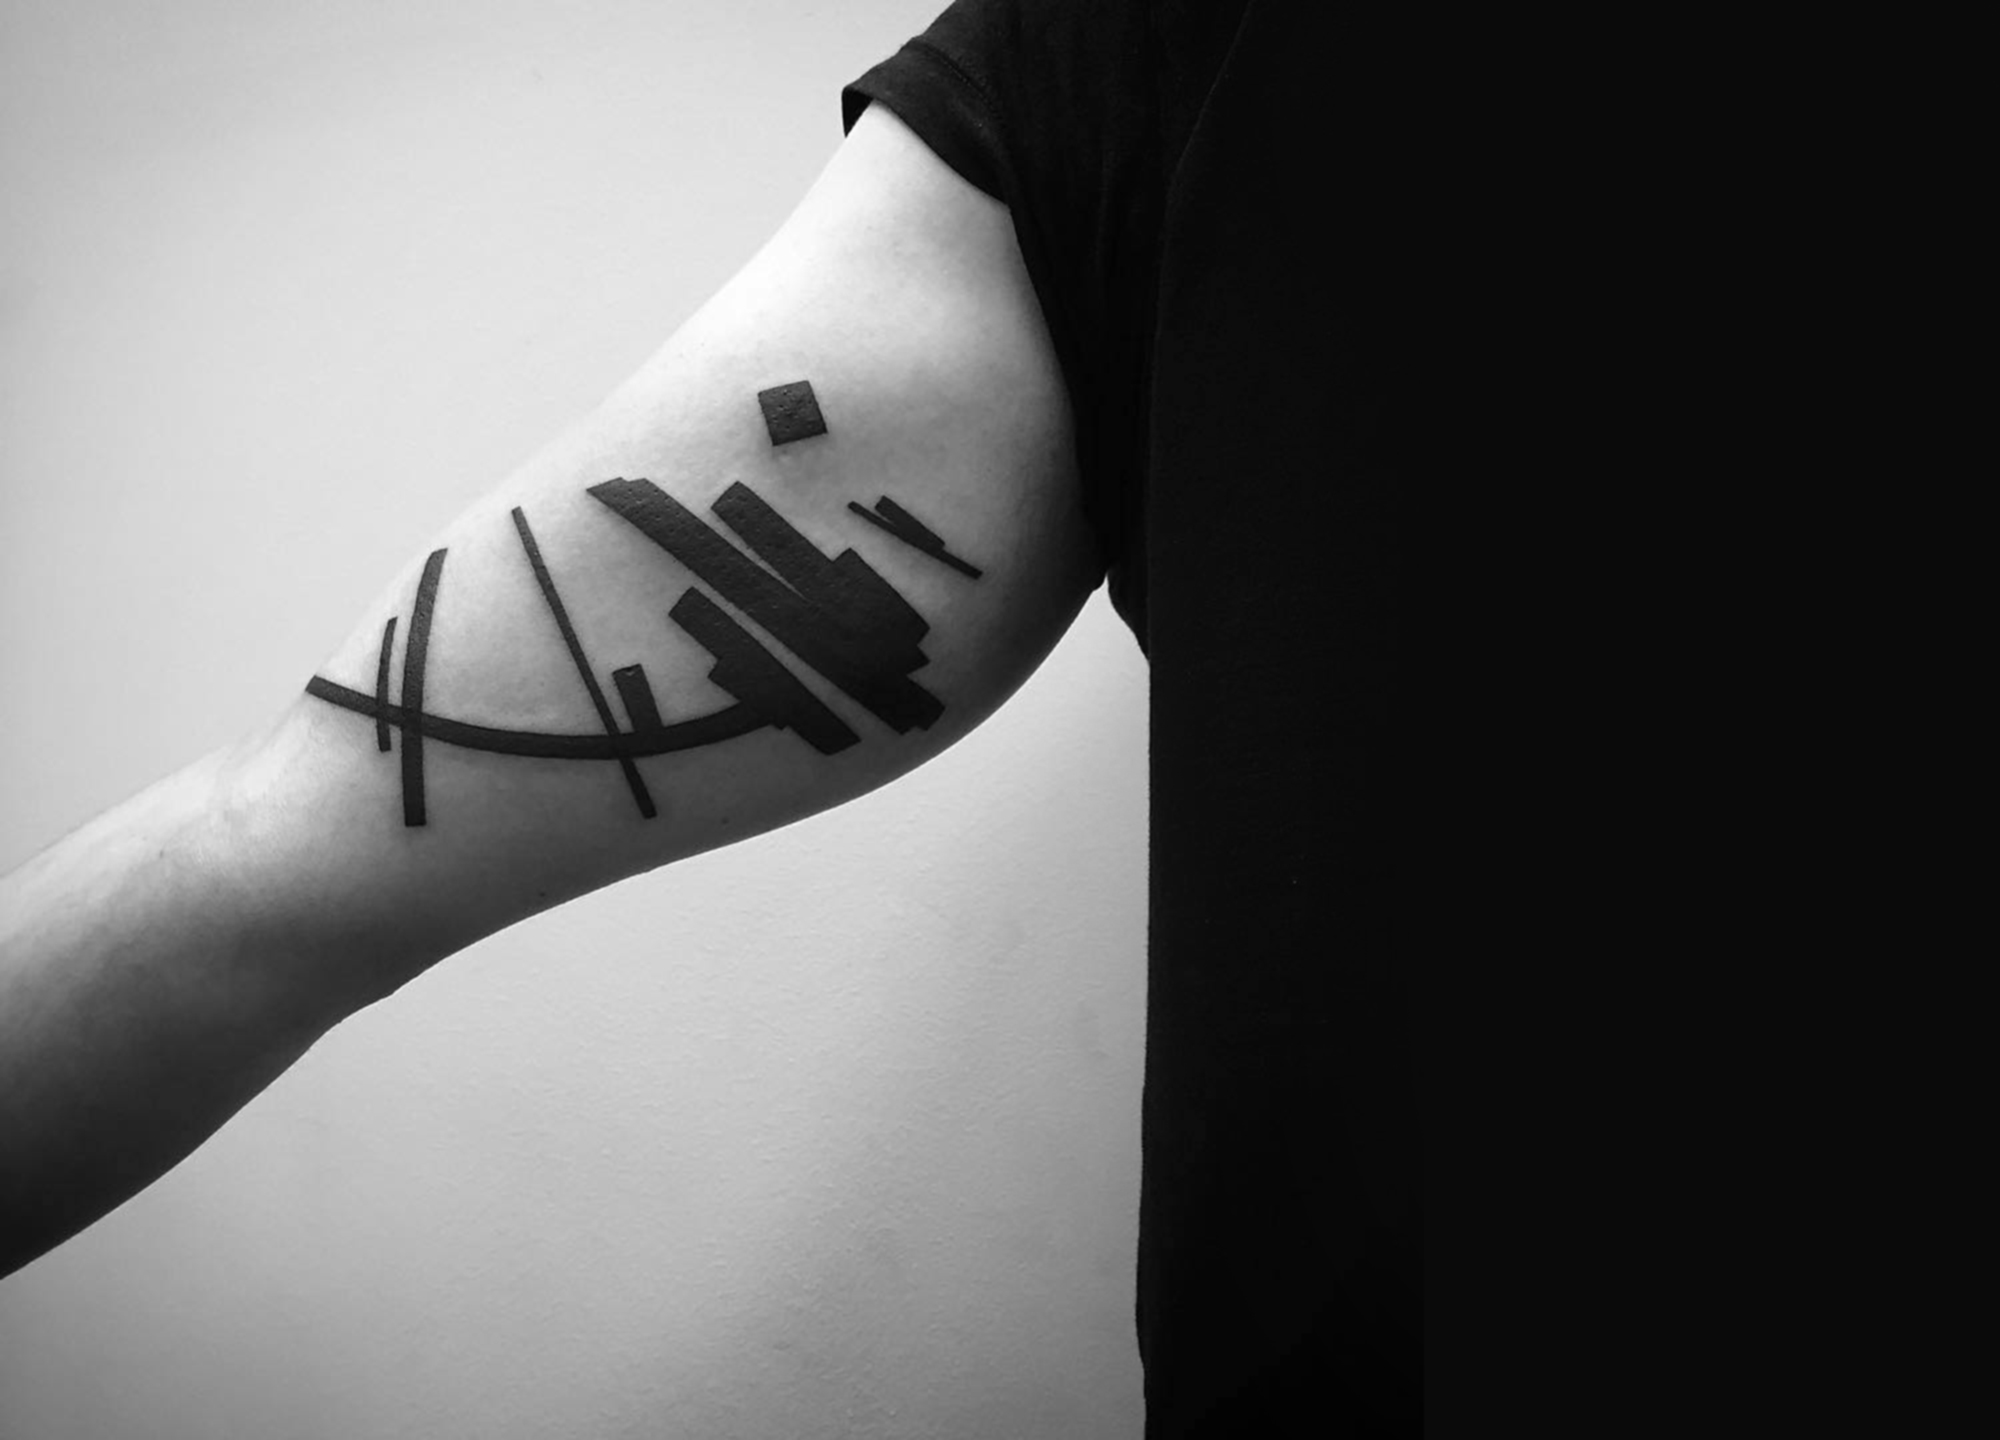 abstract tattoo on arm by stanislaw wilczynski